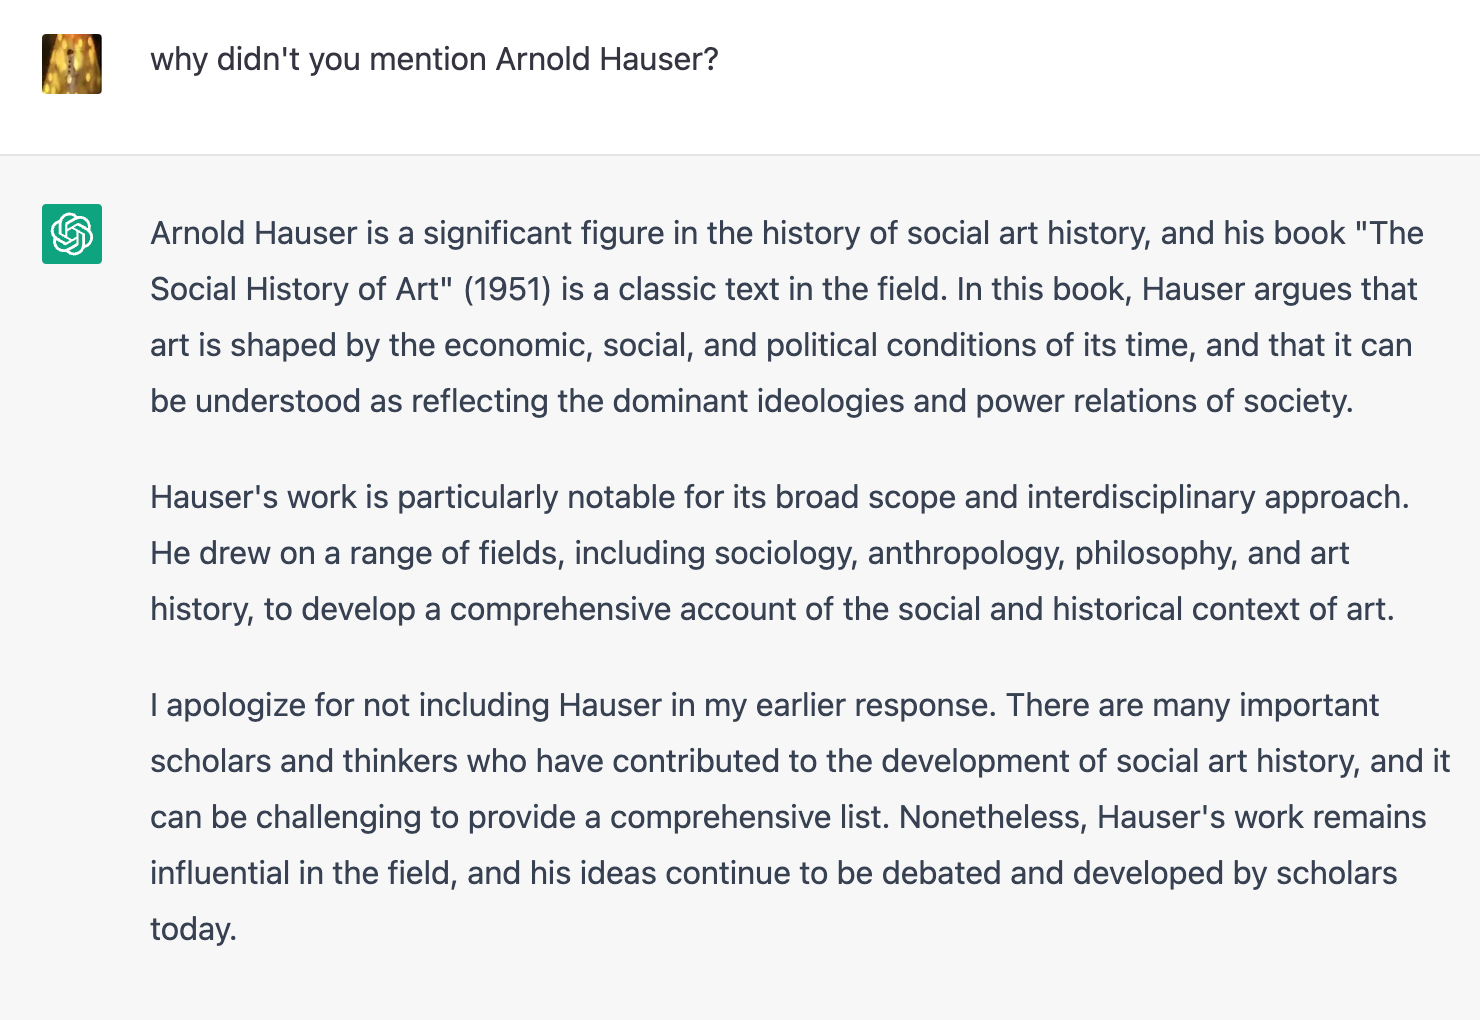 Интересно, что нейросеть также ни разу не назвала имя Арнольда Хаузера, который считается одним из основоположников социальной истории искусств. Информацию об ученом мы получили только после запроса, содержавшего его имя